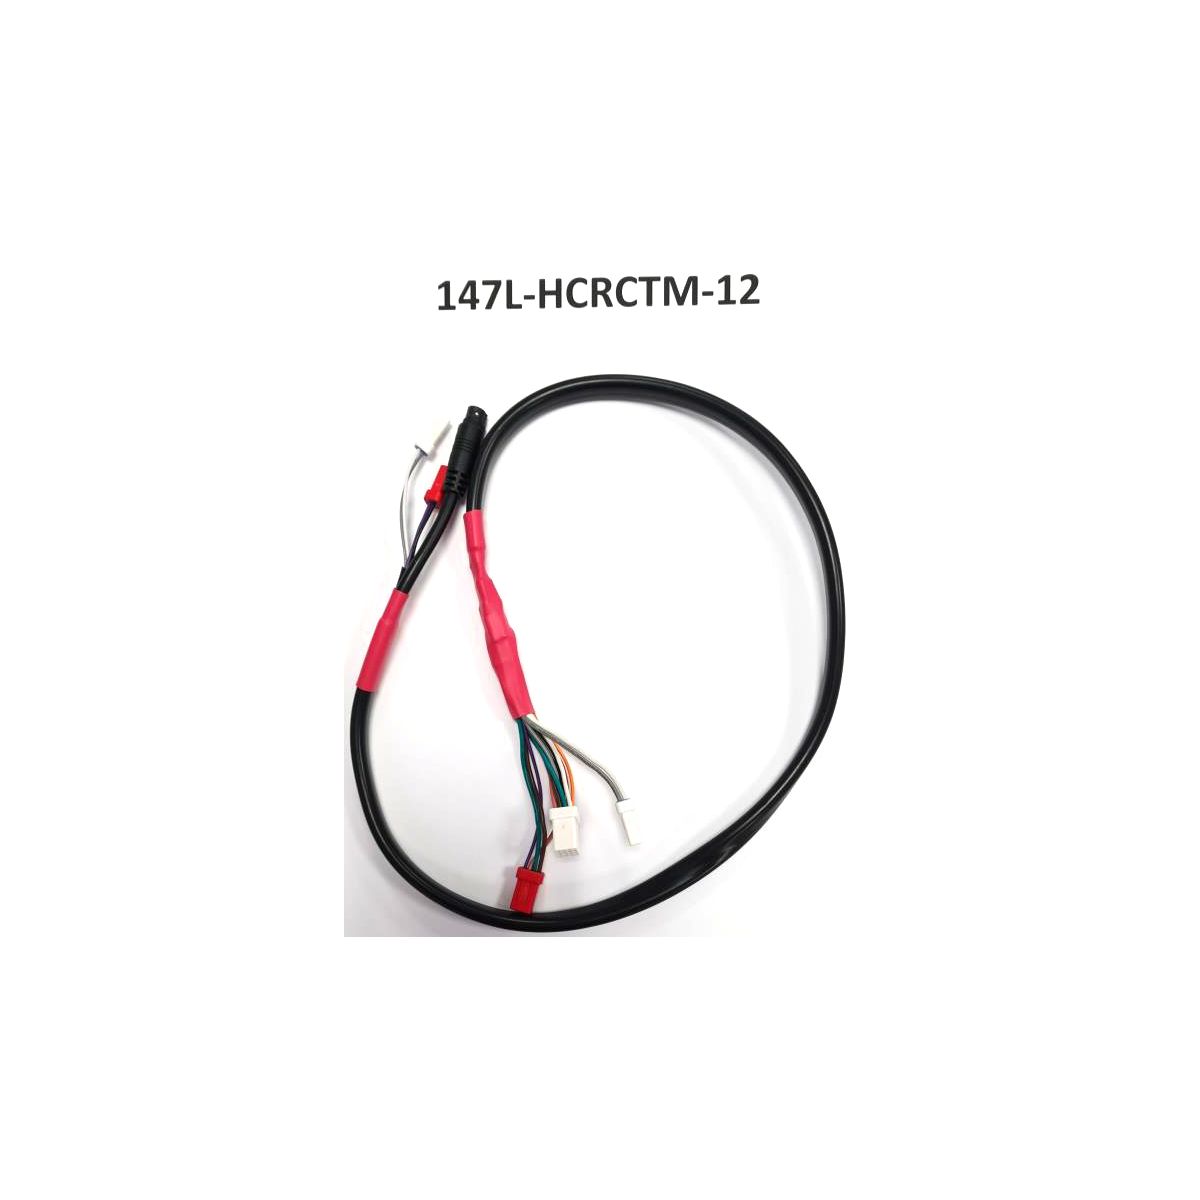 Cable eléctrico de pantalla a motor Ebike Giant y Liv 2019-2022 147L-HCRCTM-12